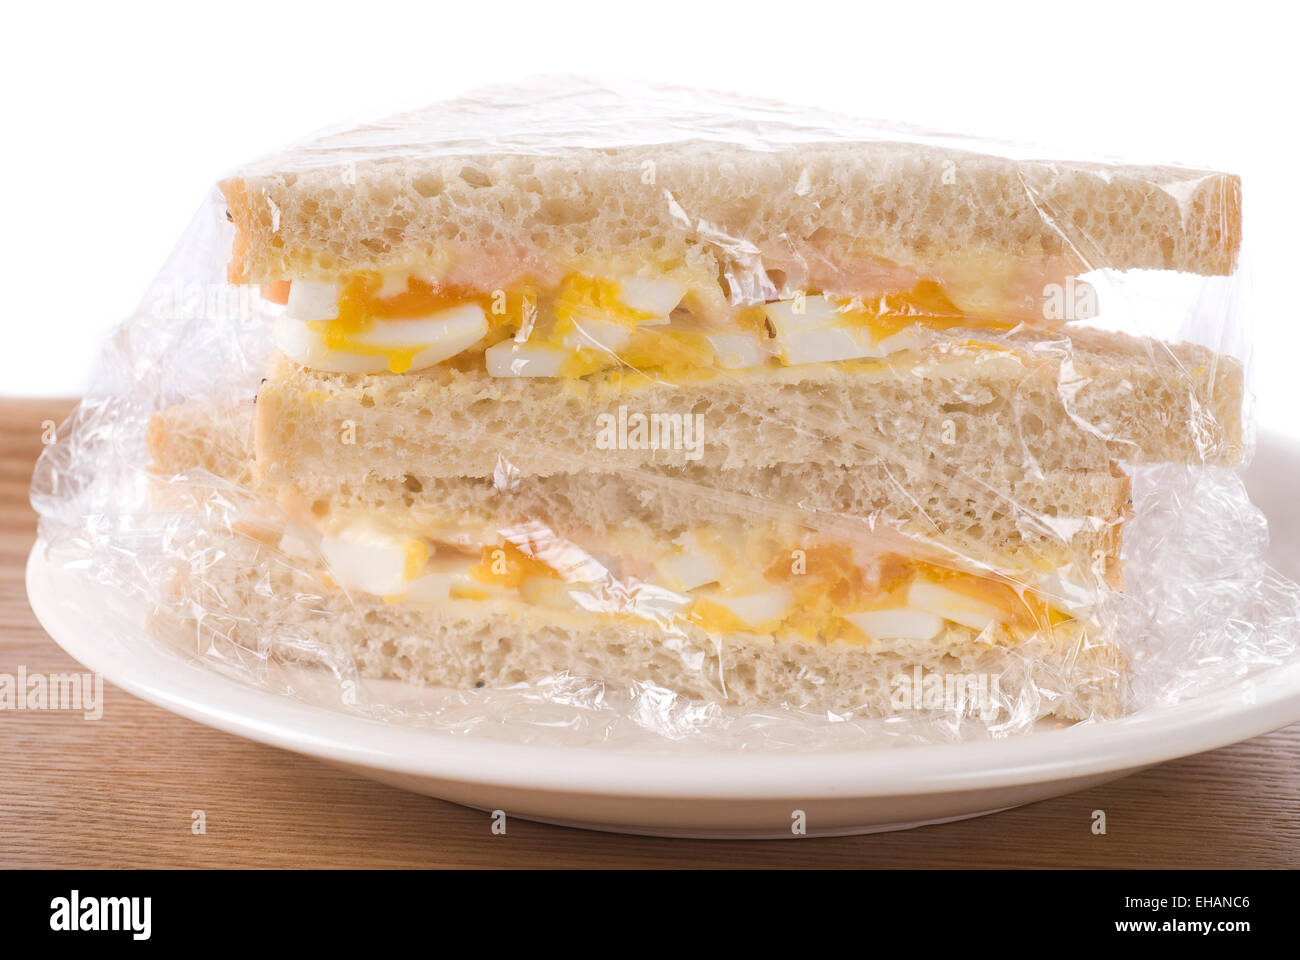 Egg, mayonnaise an caviar sandwich. Stock Photo